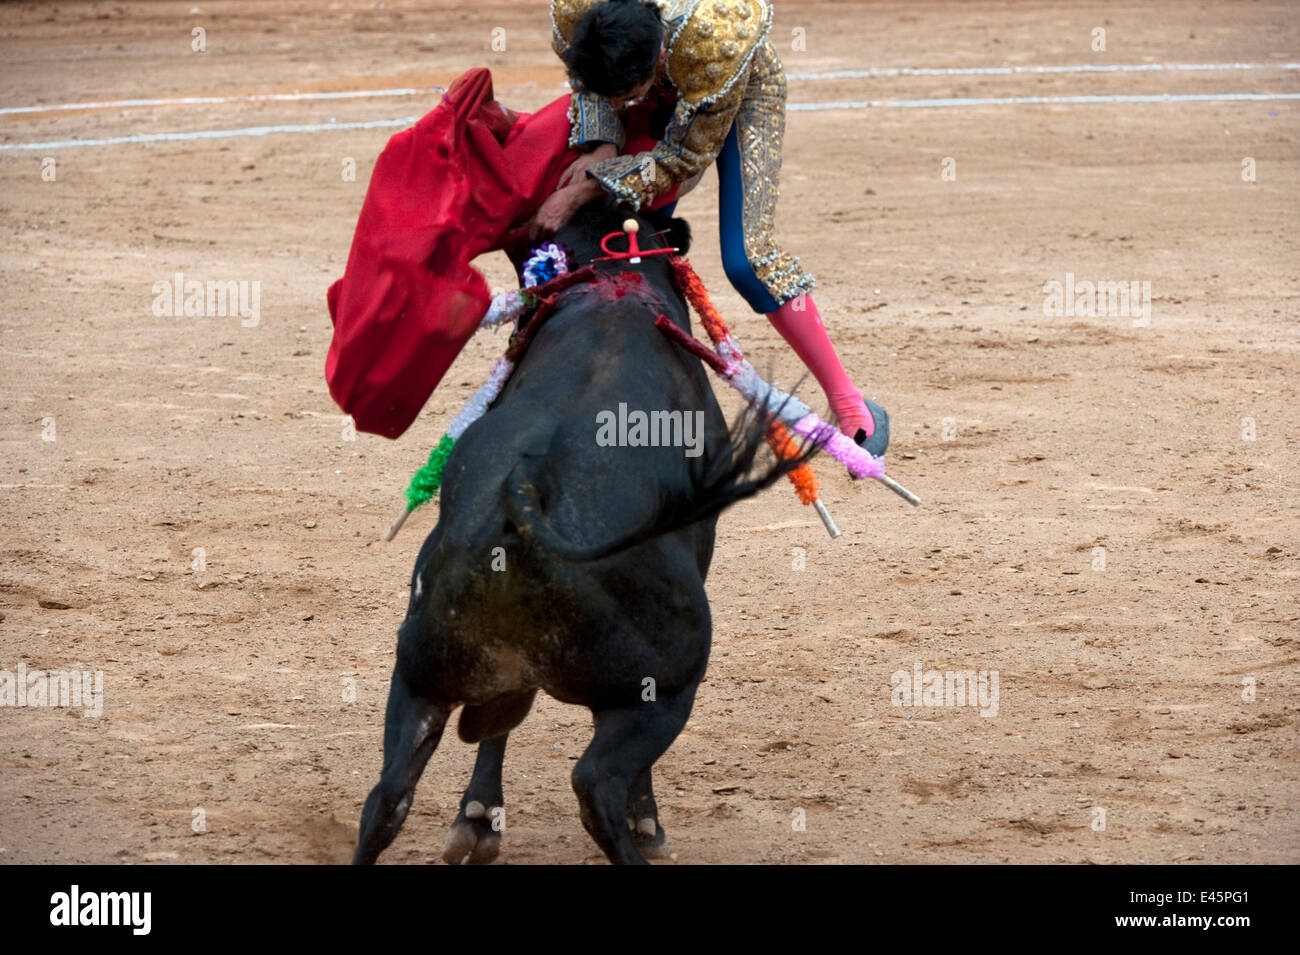 Matador in Endphase der Stierkampf springt über Bull, Bull zwischen den Hörnern mit Klinge, Plaza de Toros, Mexico City, Mexiko-Sequenz zu durchbohren Stockfoto